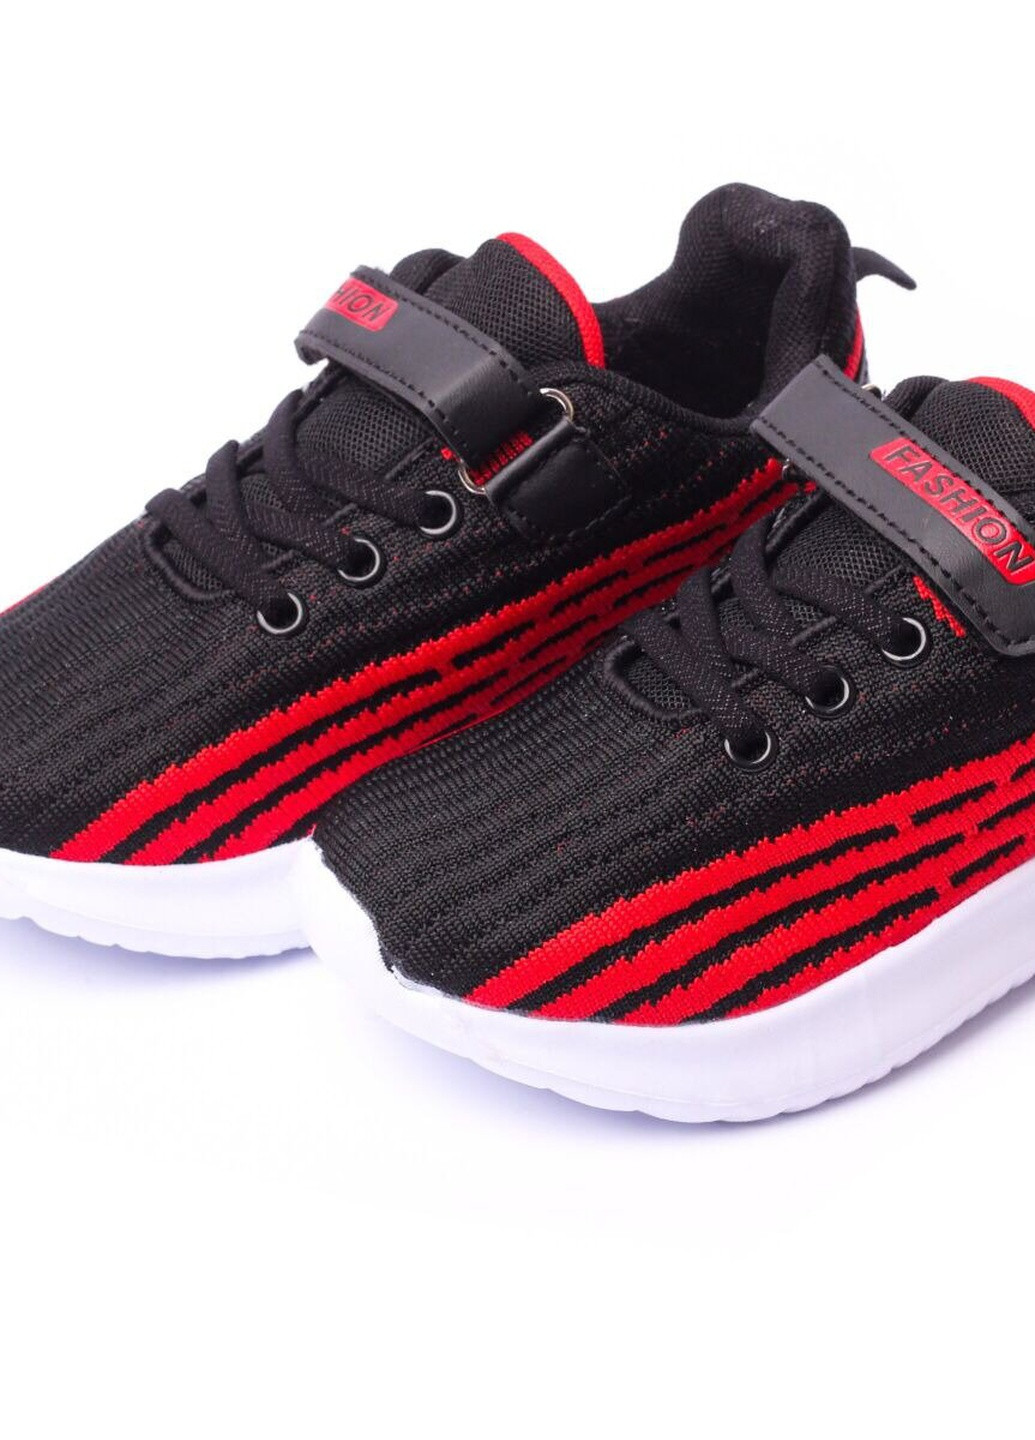 Красные демисезонные кроссовки детские, для мальчика, 31 размер черно-красный 2000903169574 Erra